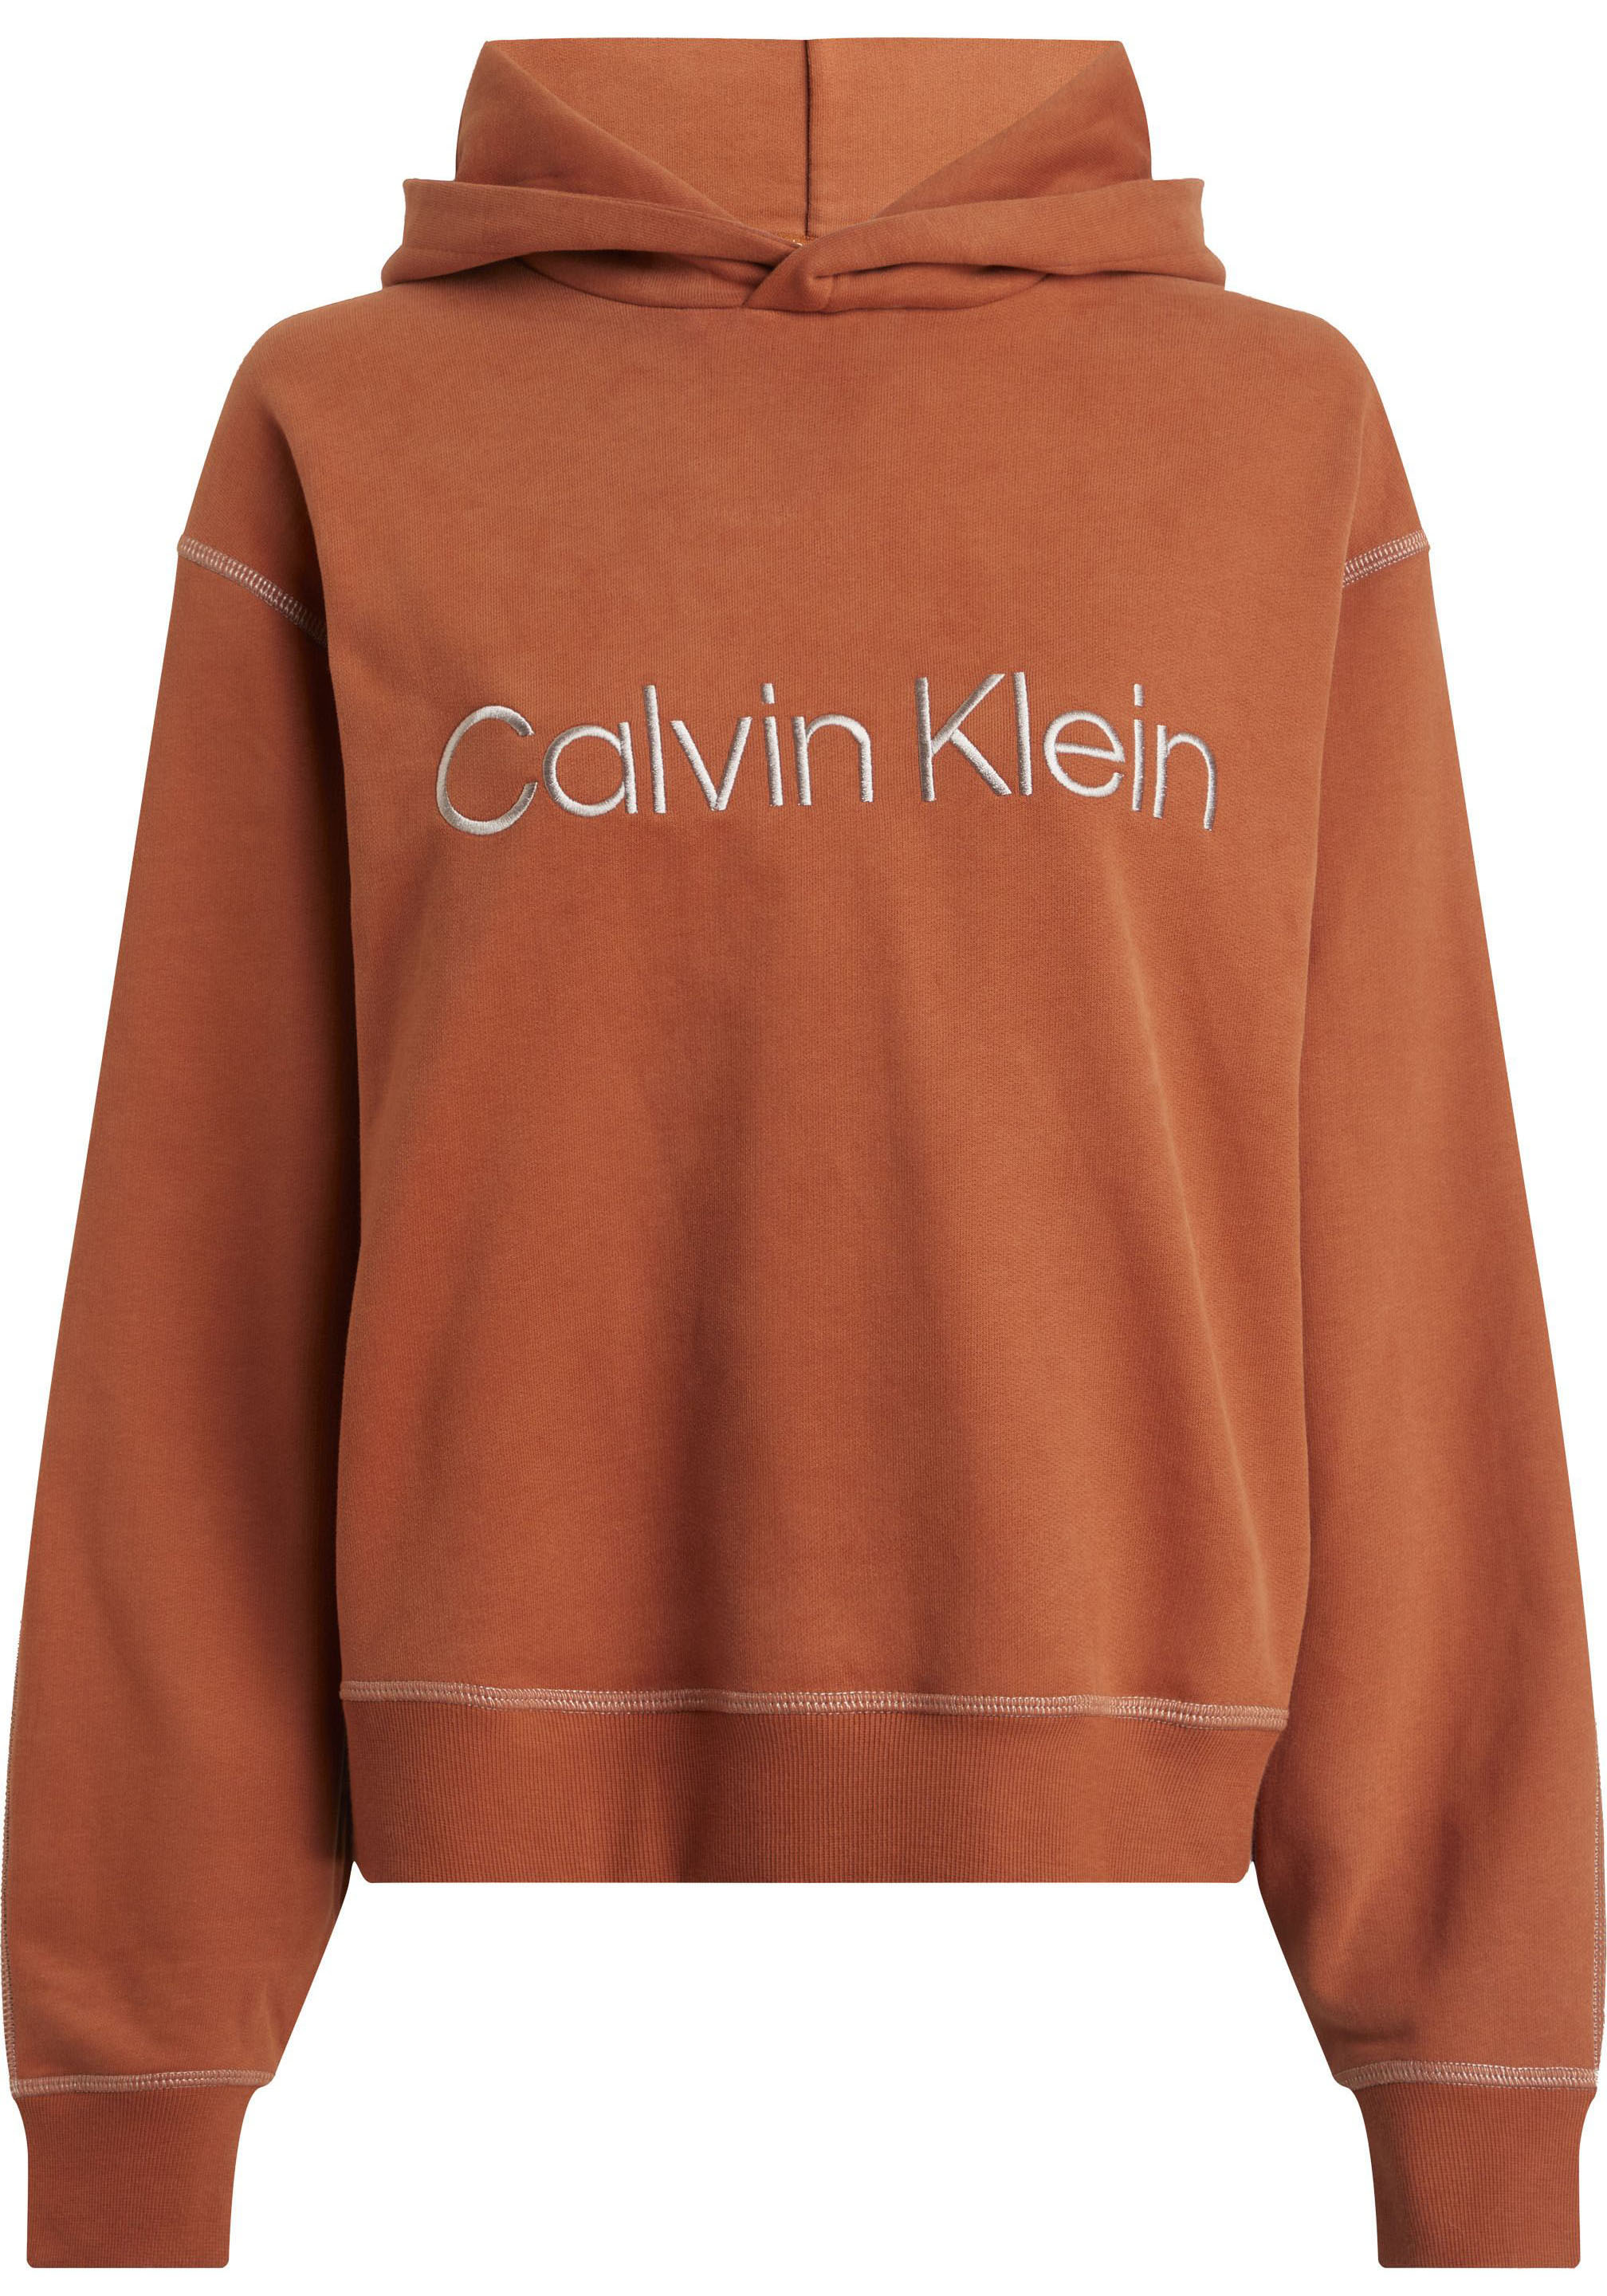 Calvin Klein Damen Hoodie Pullover, Ginger Bread/Copper Coin Stitching, 46